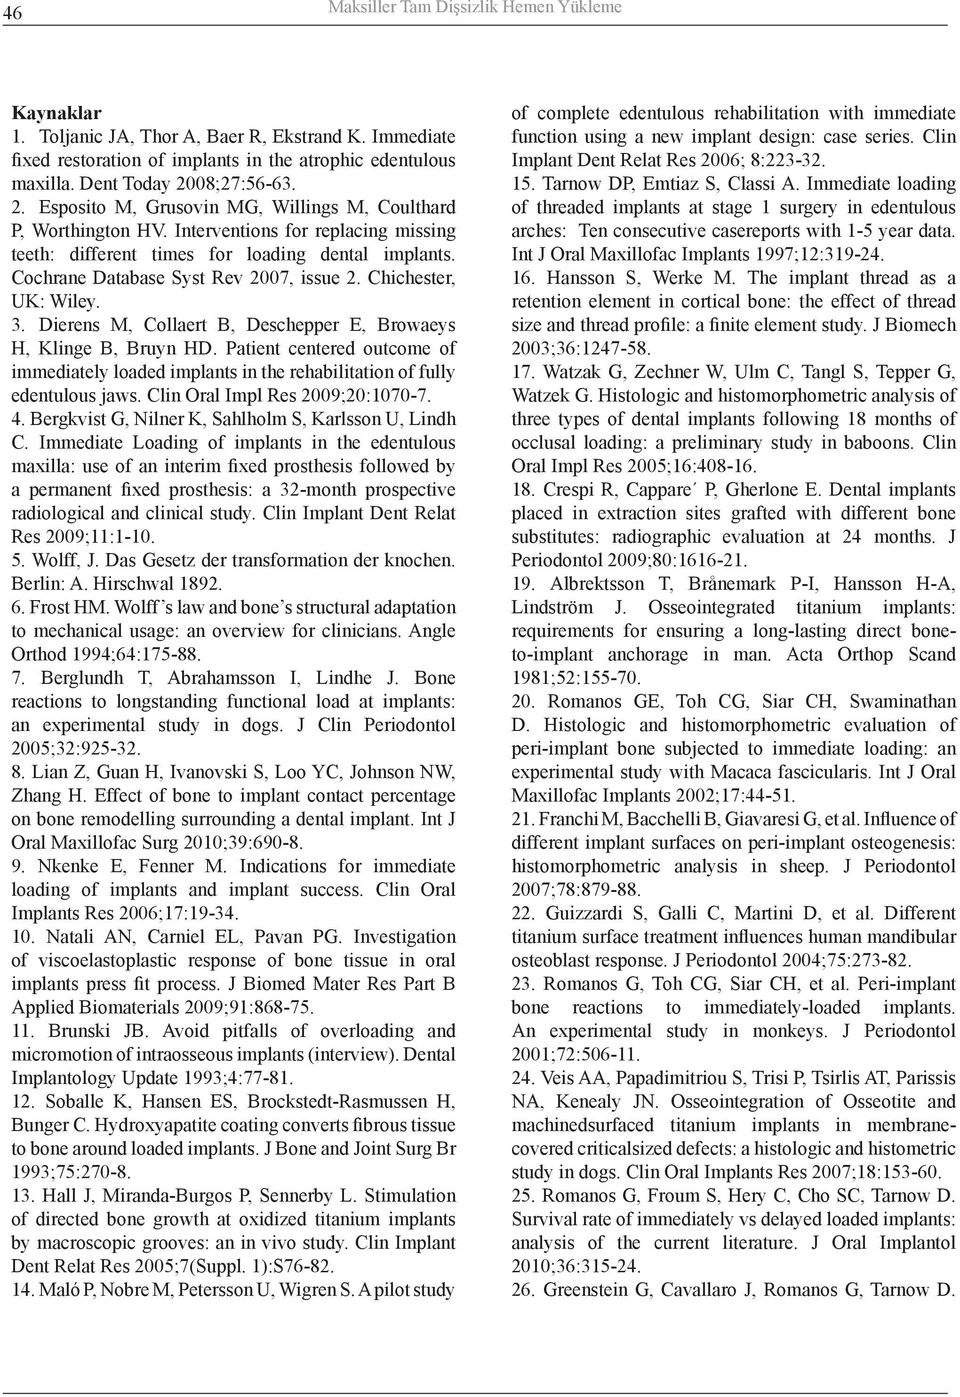 Cochrane Database Syst Rev 2007, issue 2. Chichester, UK: Wiley. 3. Dierens M, Collaert B, Deschepper E, Browaeys H, Klinge B, Bruyn HD.